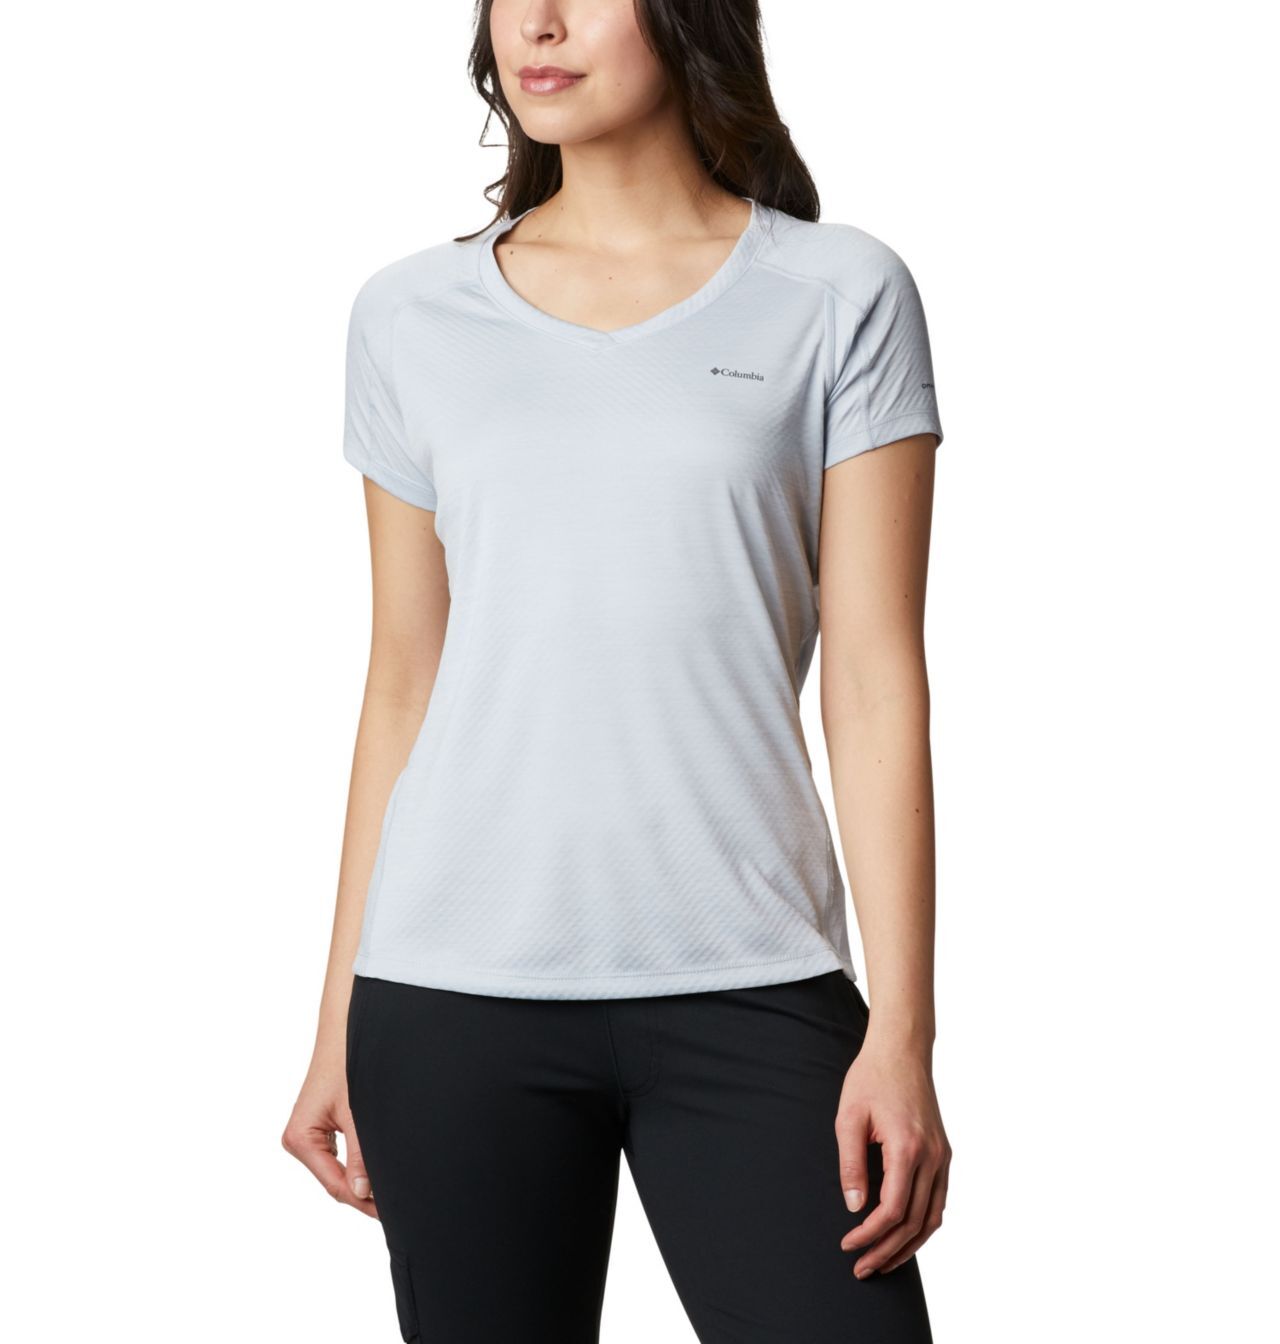 Columbia Zero Rules™ Short Sleeve Shirt - T-paita - Naiset